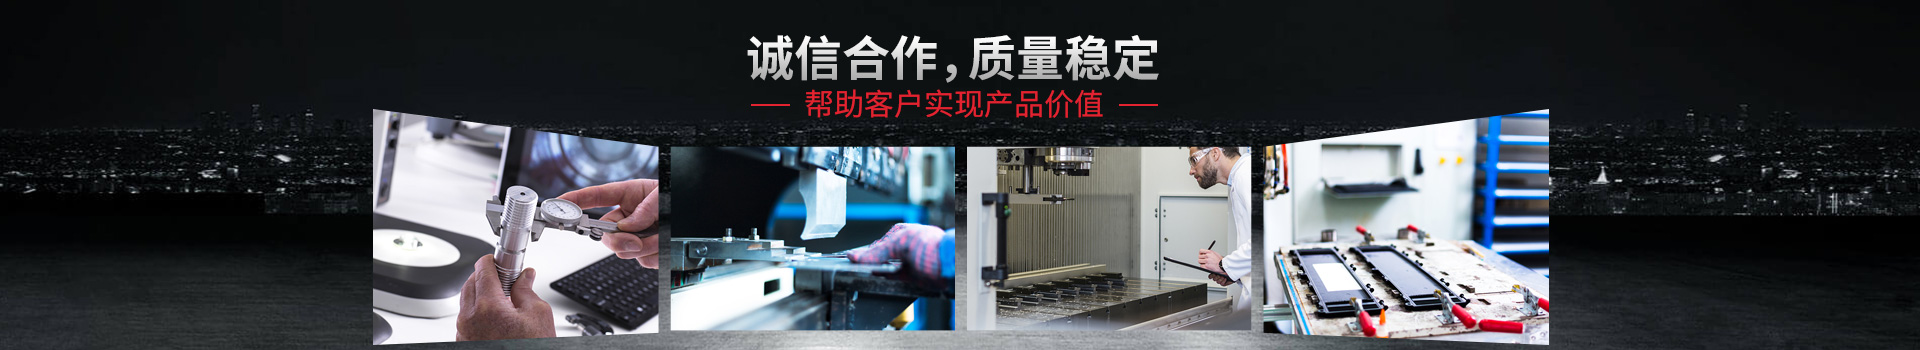 js3845金沙线路检测,深圳CNC加工厂家——诚信合作,质量稳定